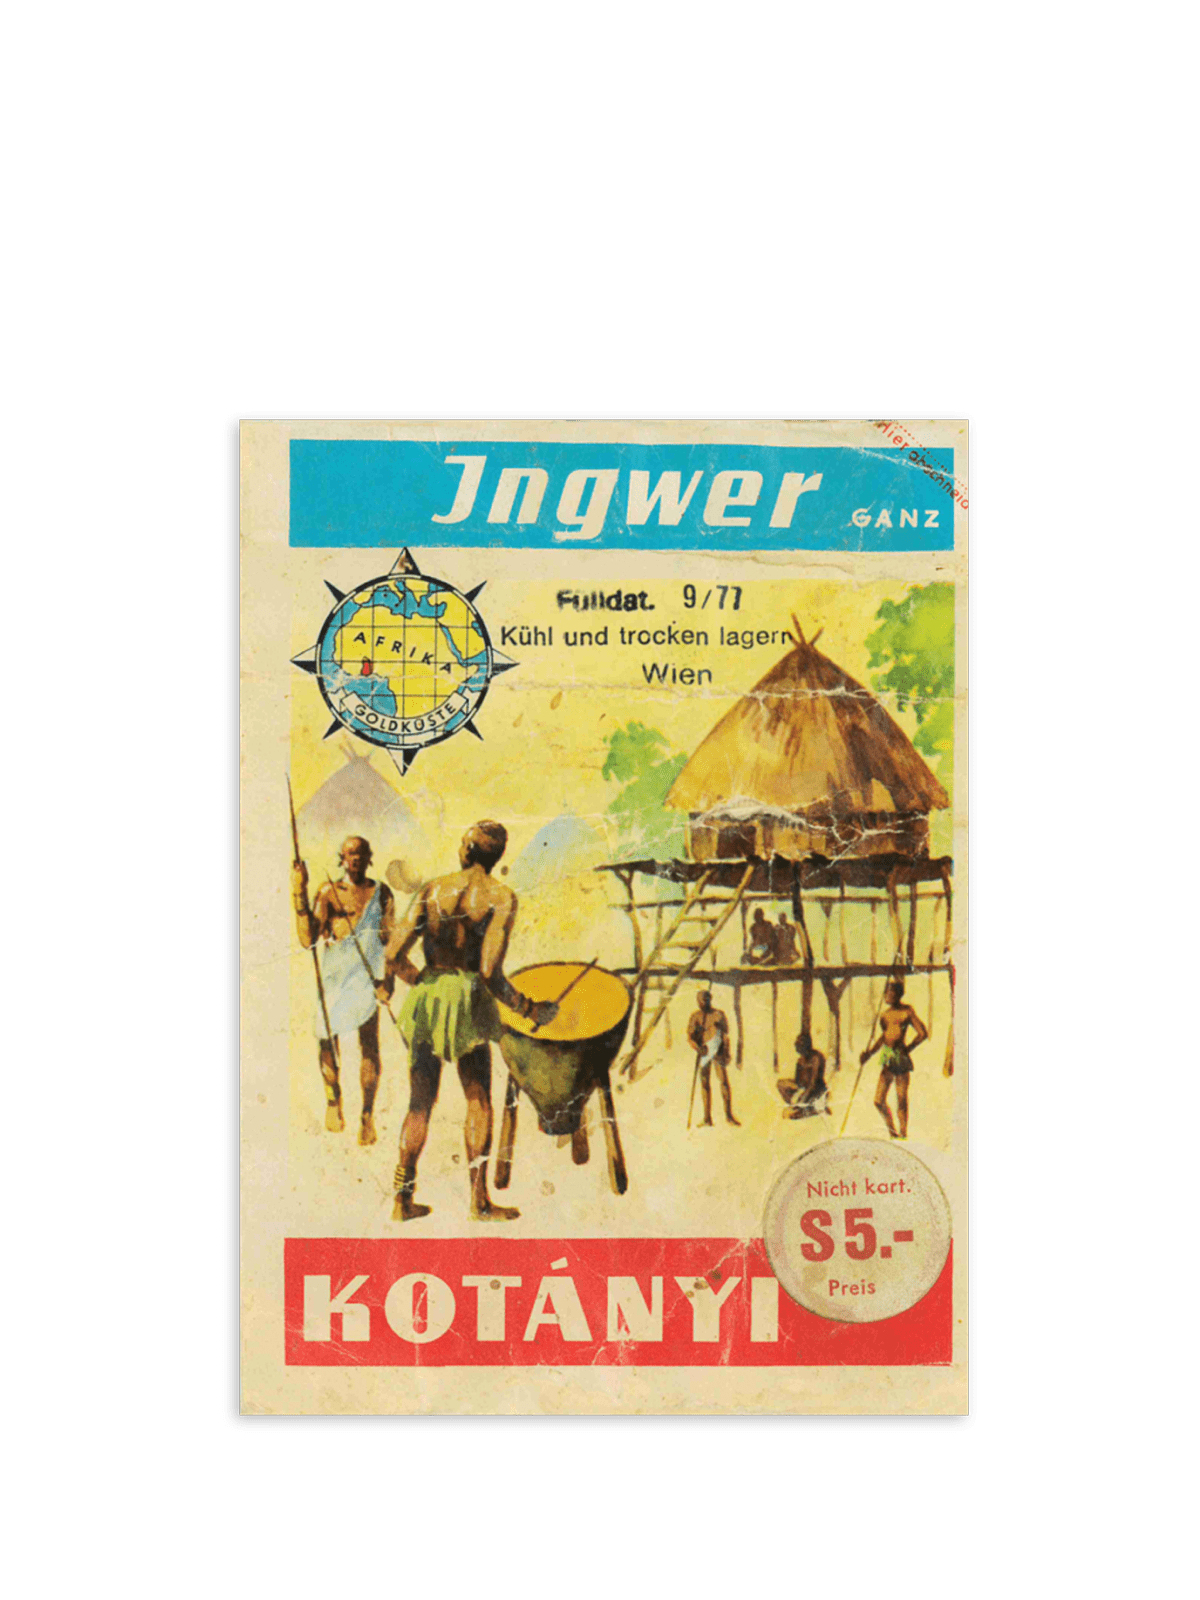 Пакетик імбиру Kotányi, 1970-ті рр.